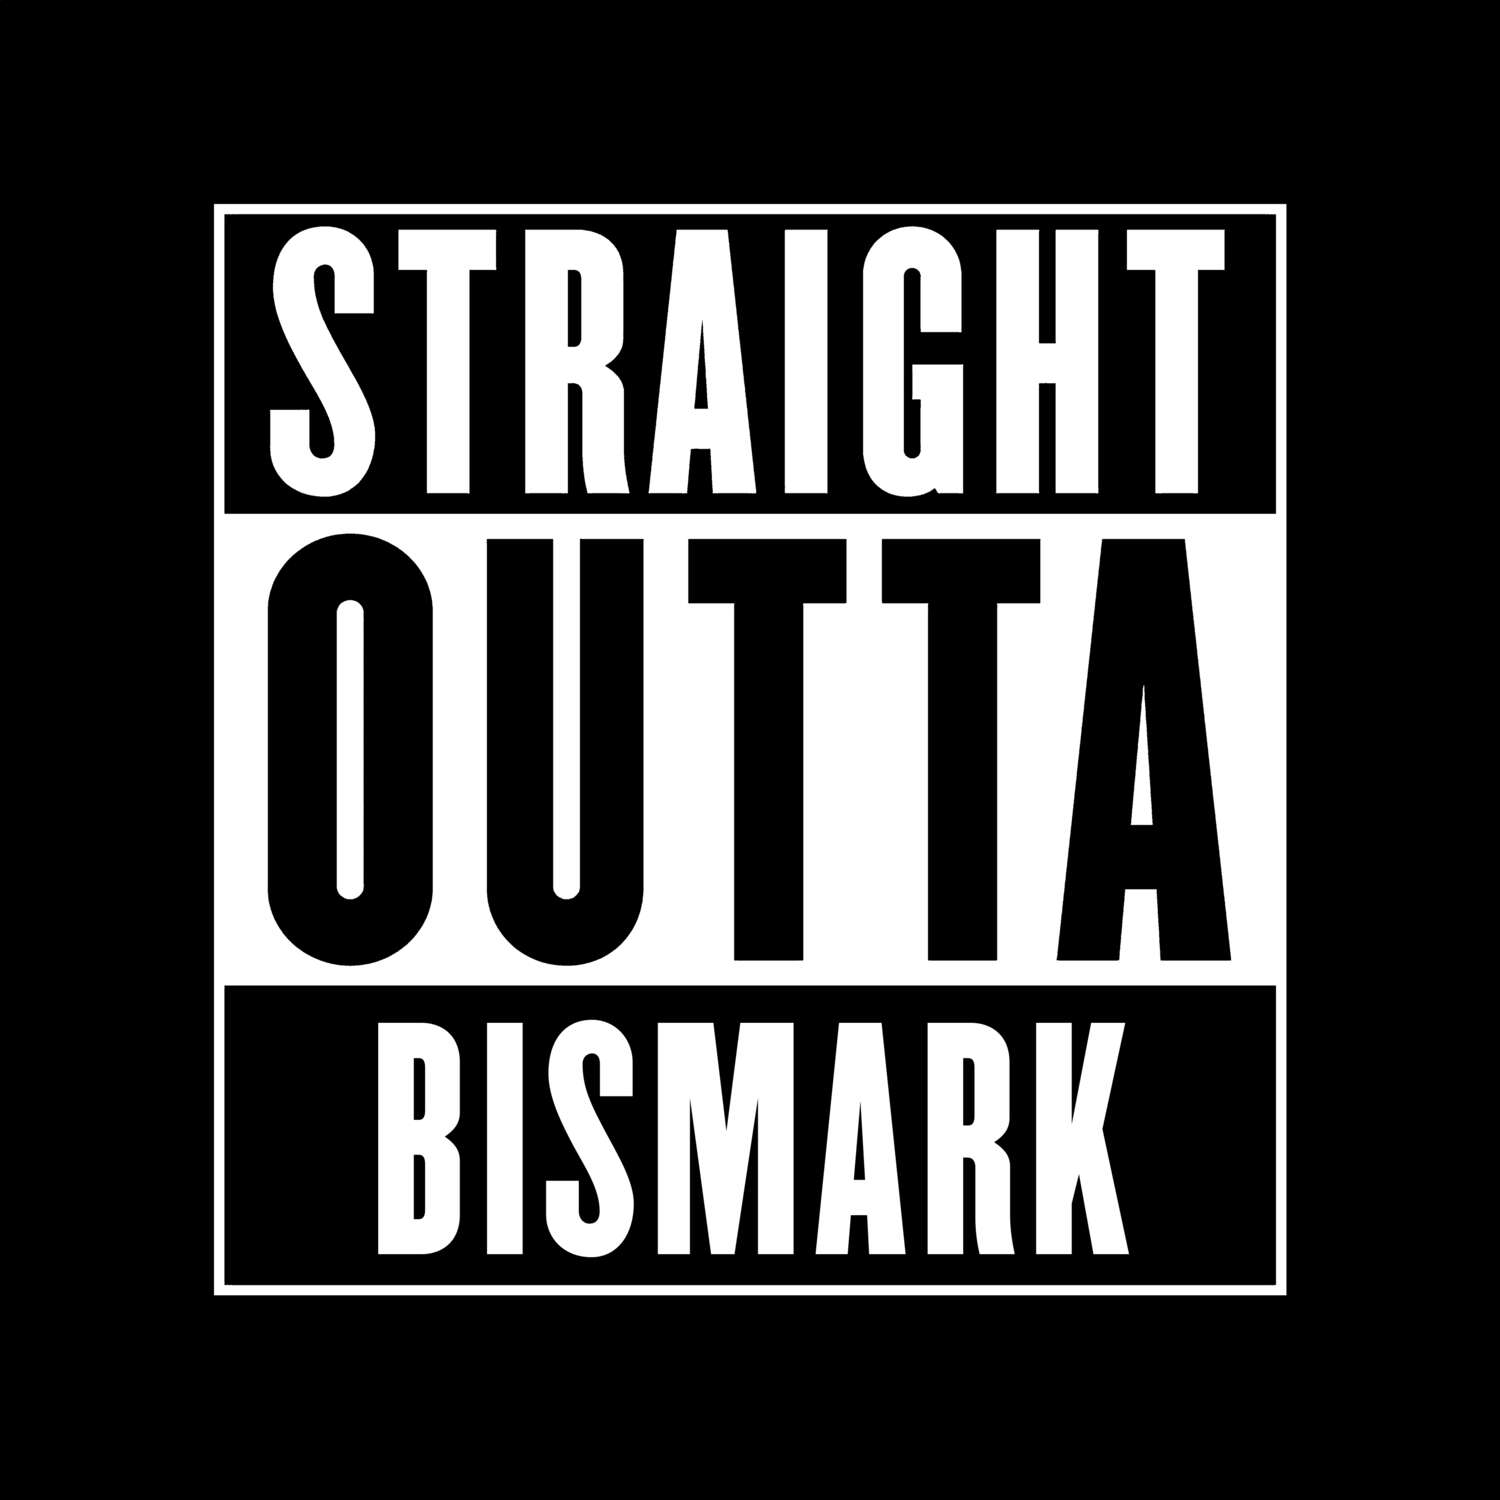 Bismark T-Shirt »Straight Outta«